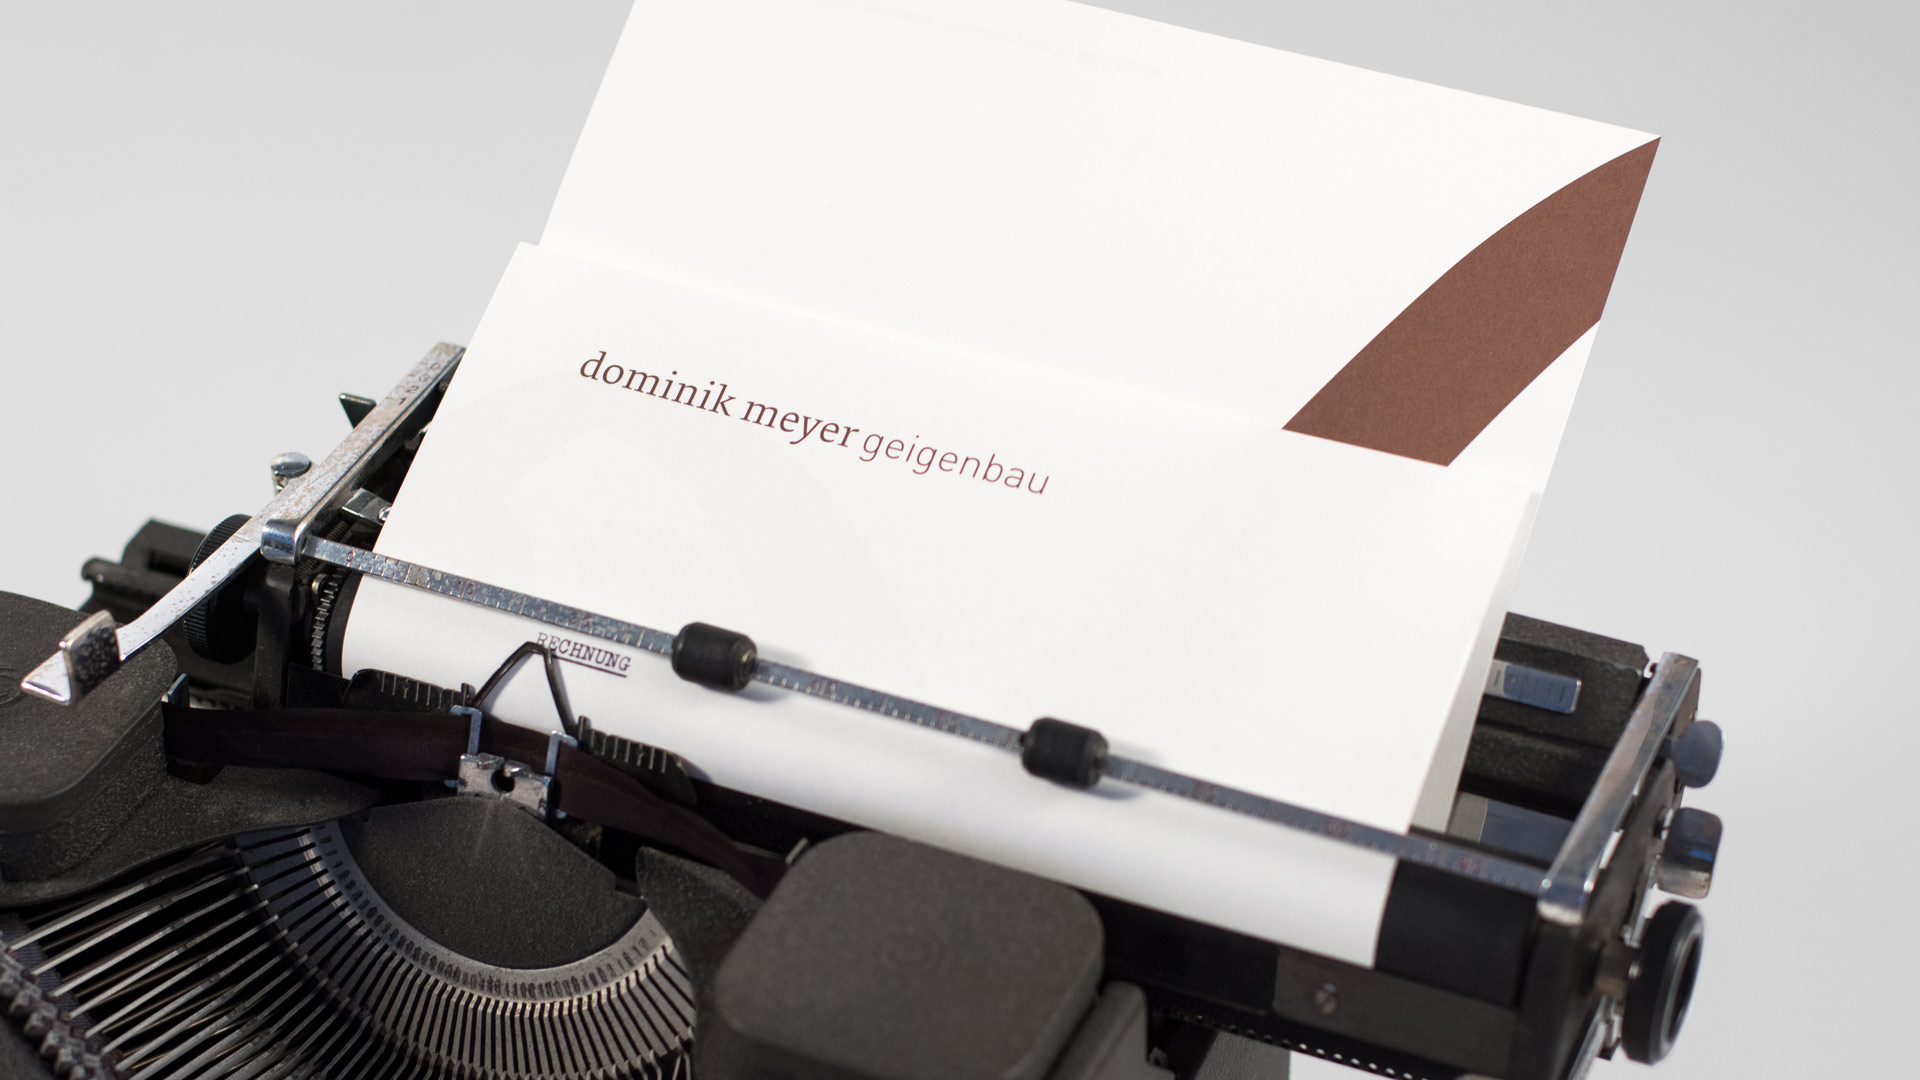 l’équipe [visuelle] – Grafik Agentur Emmenbruecke Luzern – Corporate Design und Gestaltung und Programmierung der Webseite für den Geigenbauer Dominik Meyer